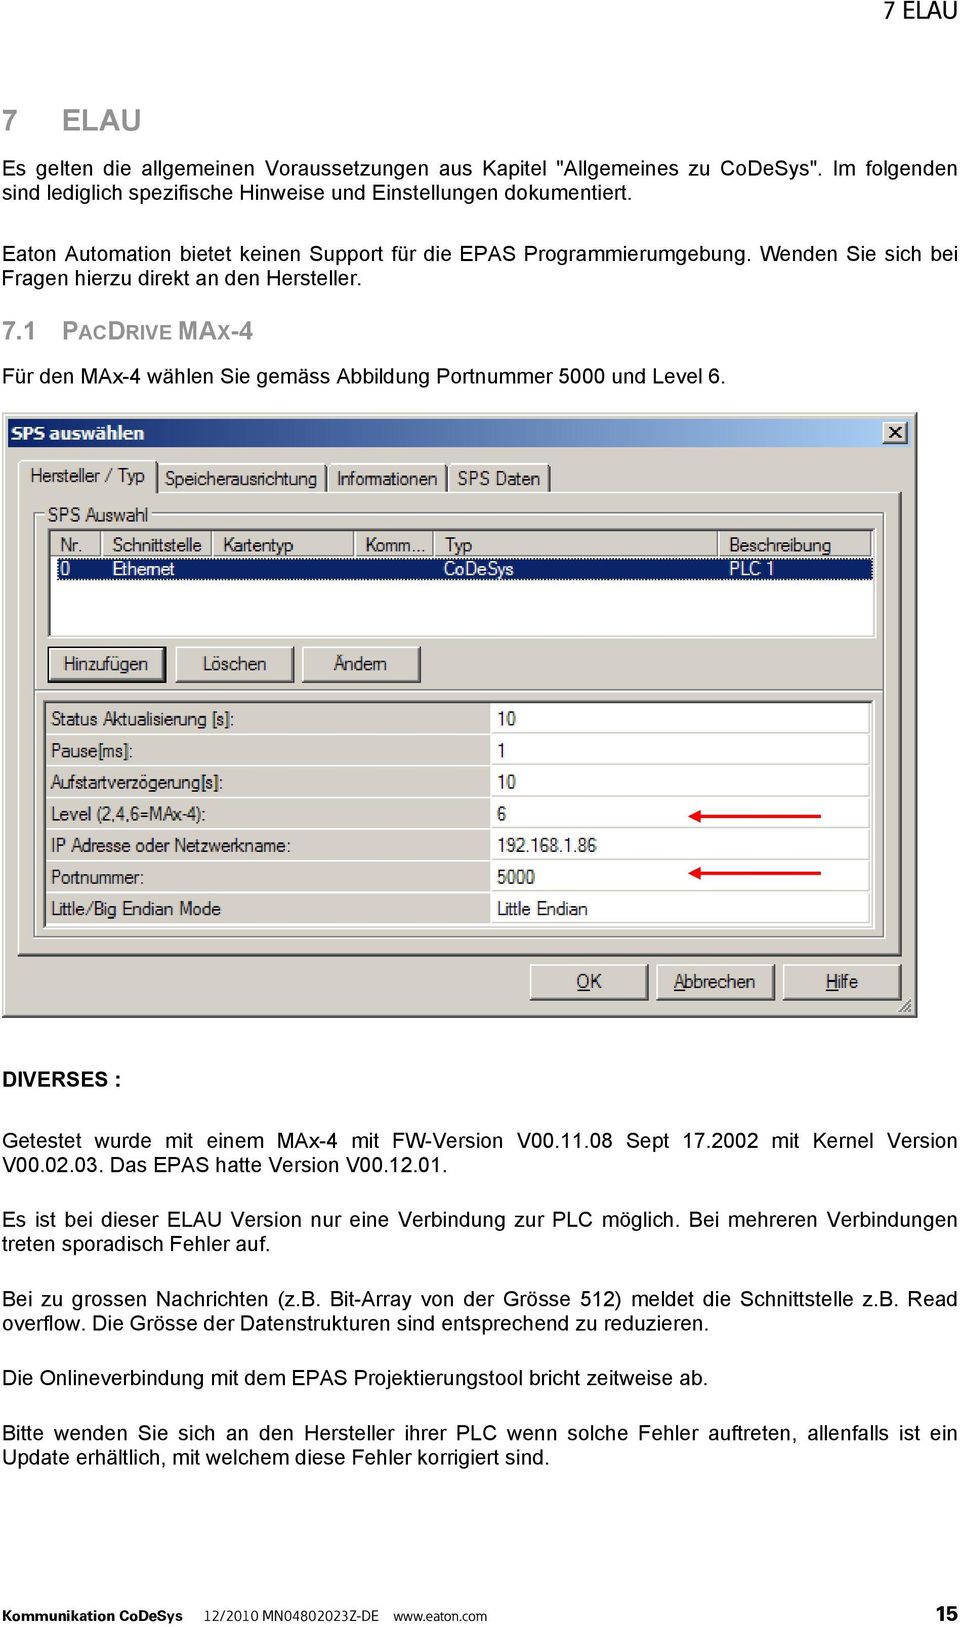 1 PACDRIVE MAX-4 Für den MAx-4 wählen Sie gemäss Abbildung Portnummer 5000 und Level 6. DIVERSES : Getestet wurde mit einem MAx-4 mit FW-Version V00.11.08 Sept 17.2002 mit Kernel Version V00.02.03.